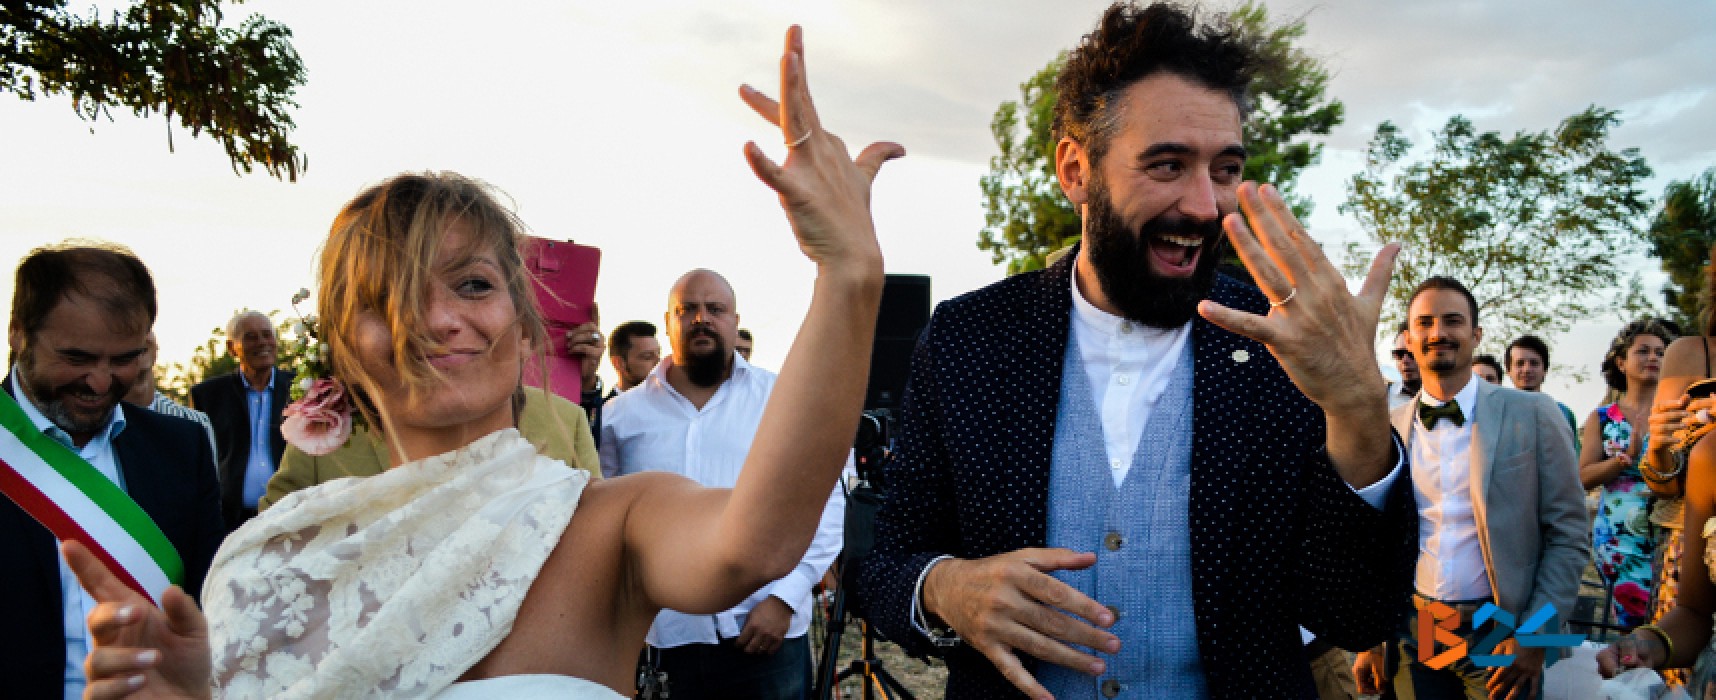 Il matrimonio ecosostenibile è biscegliese, Marzia Papagna e Domenico Pizzi sposi low cost / FOTO